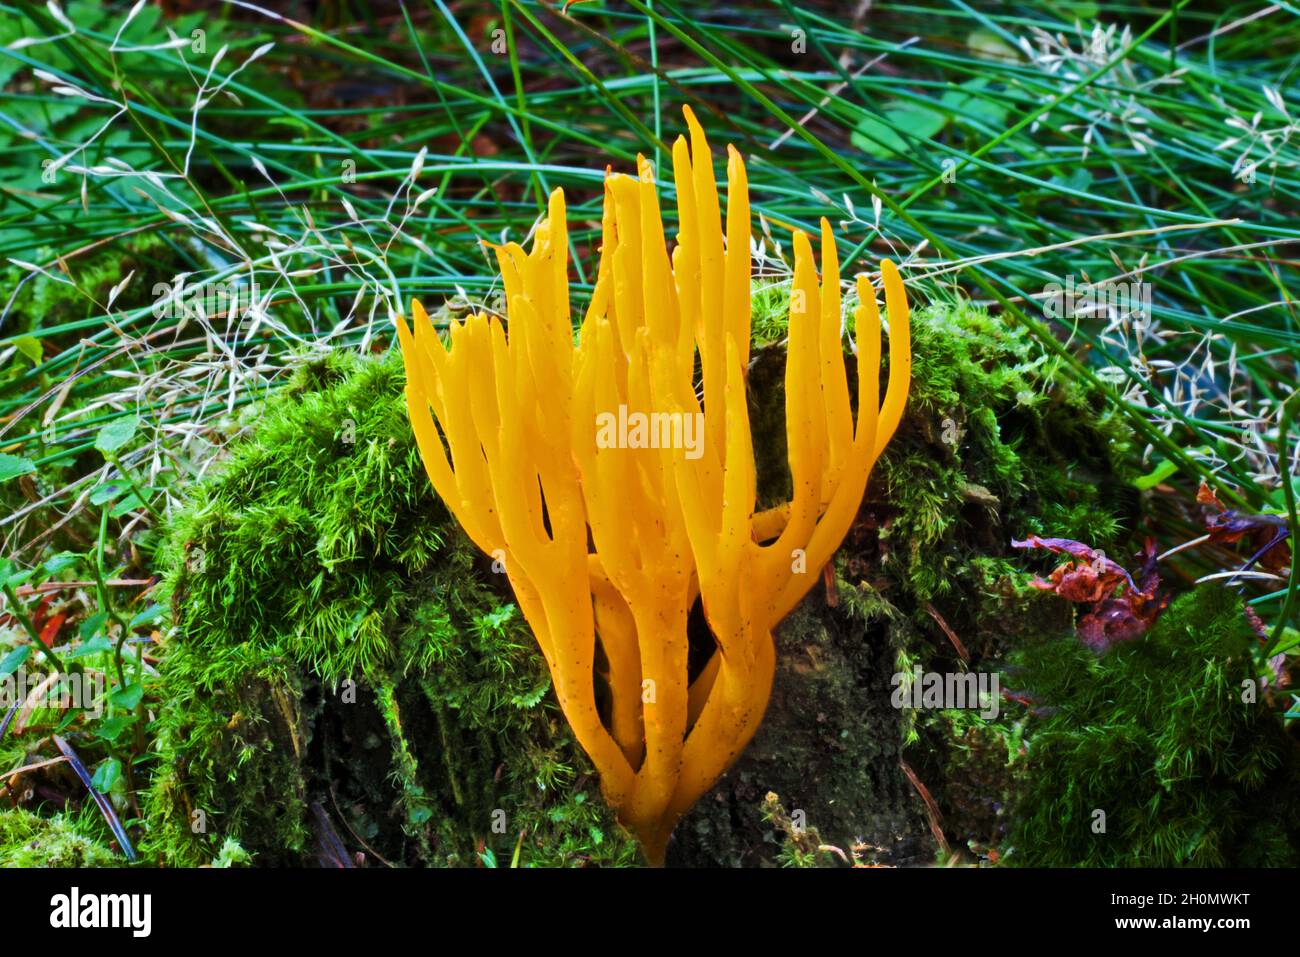 Calocera viscosa (stagshorn jaune) est un champignon de gelée qui peut être trouvé sur le bois de conifères en décomposition.Il est commun dans le monde entier. Banque D'Images